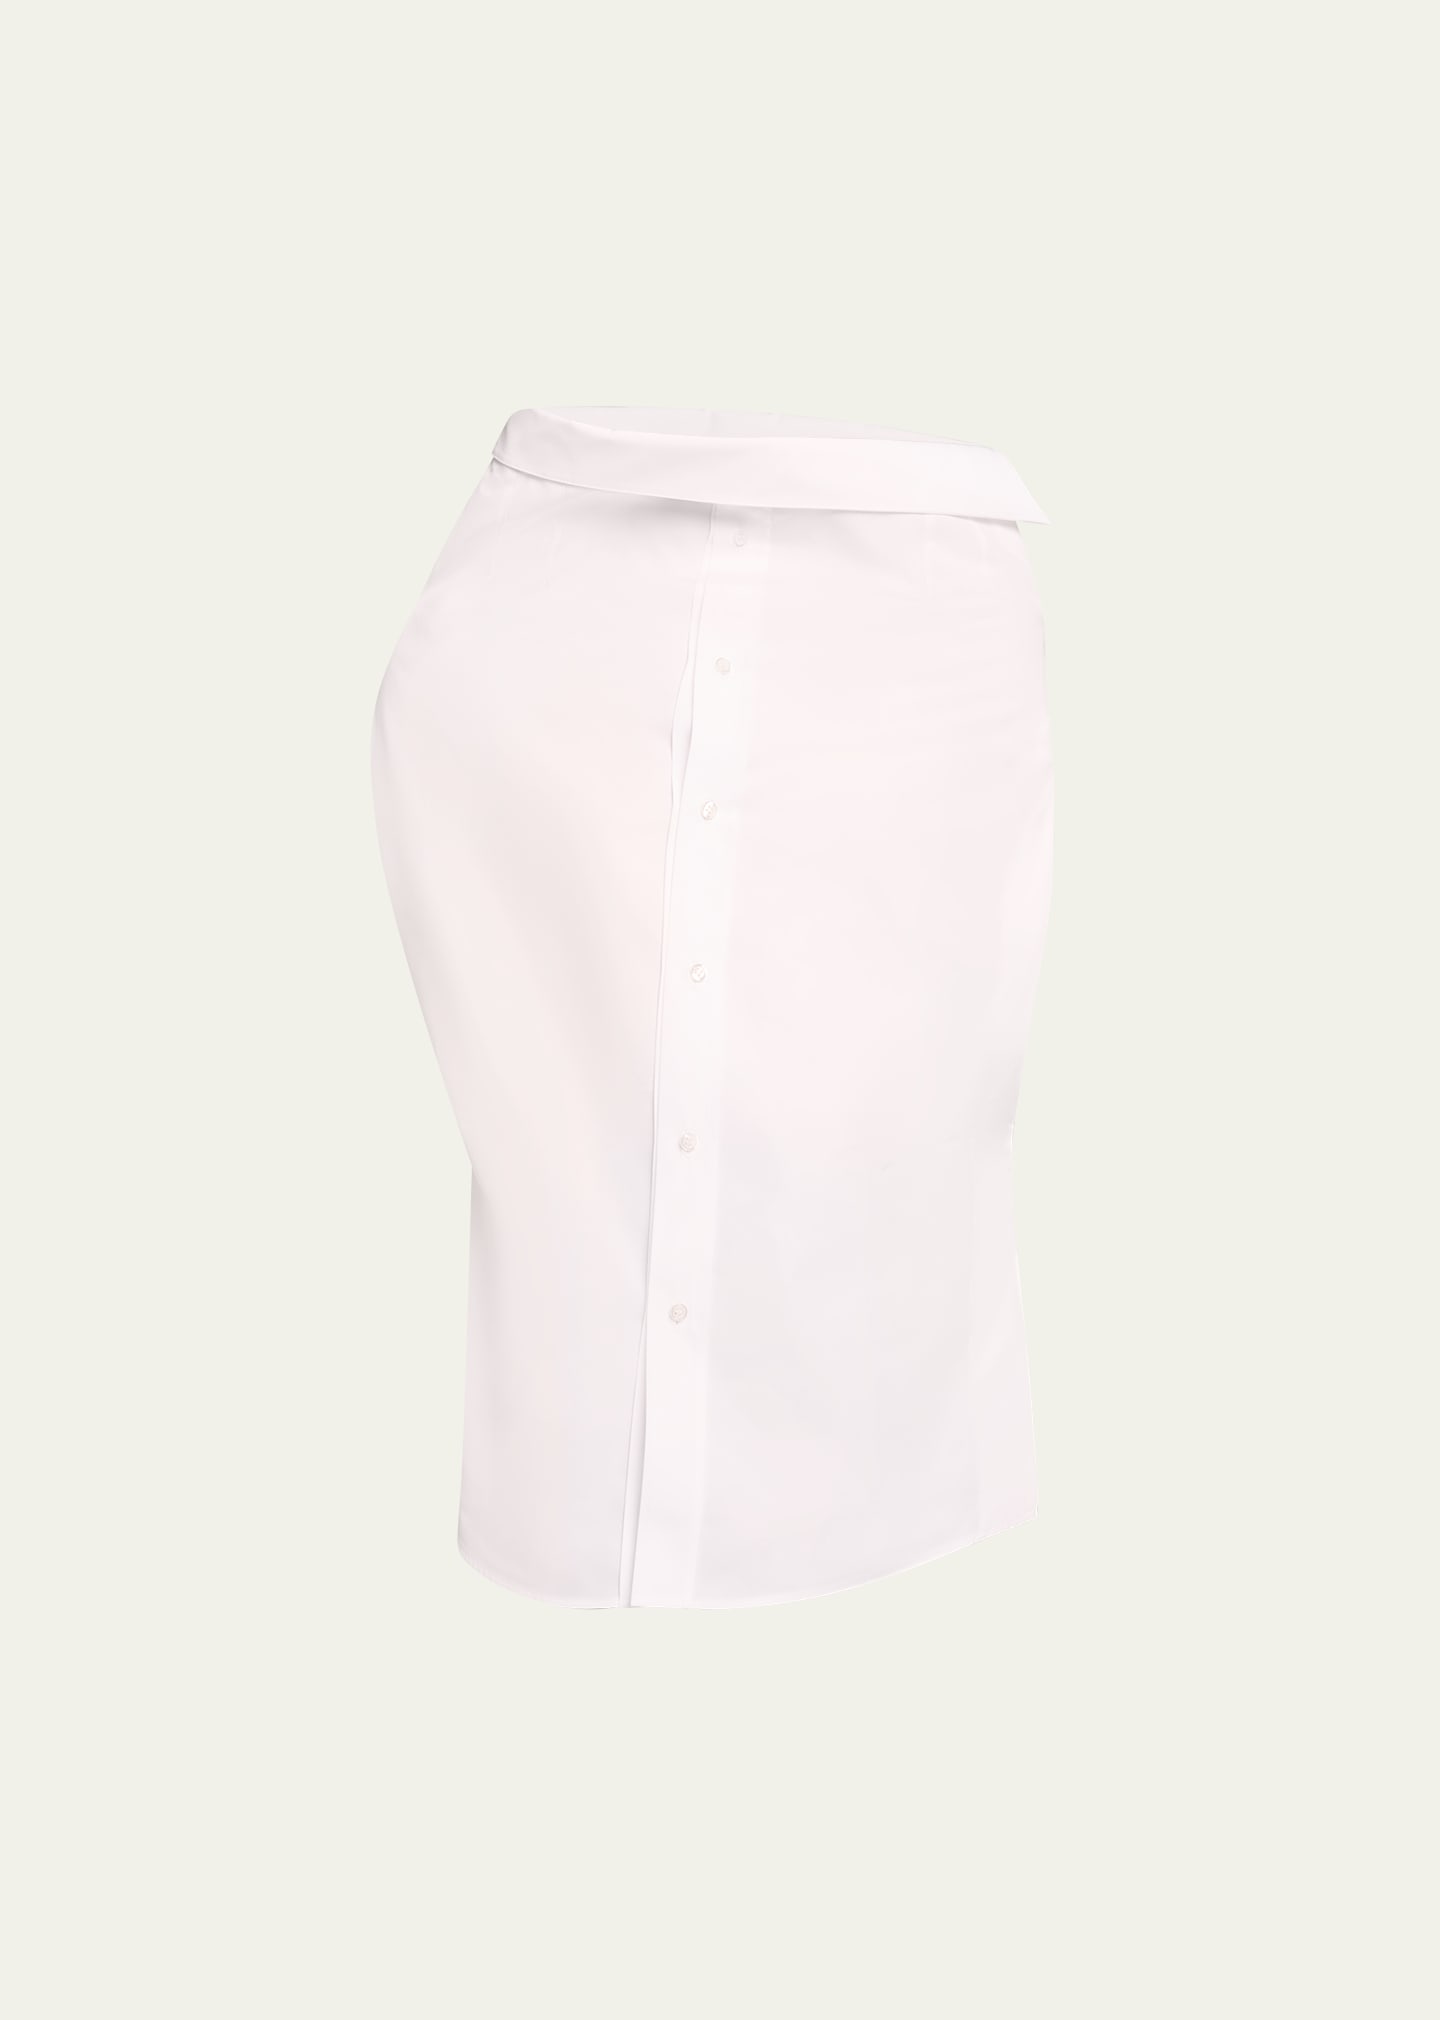 Alainpaul High-neck Poplin Skirt Blouse In White